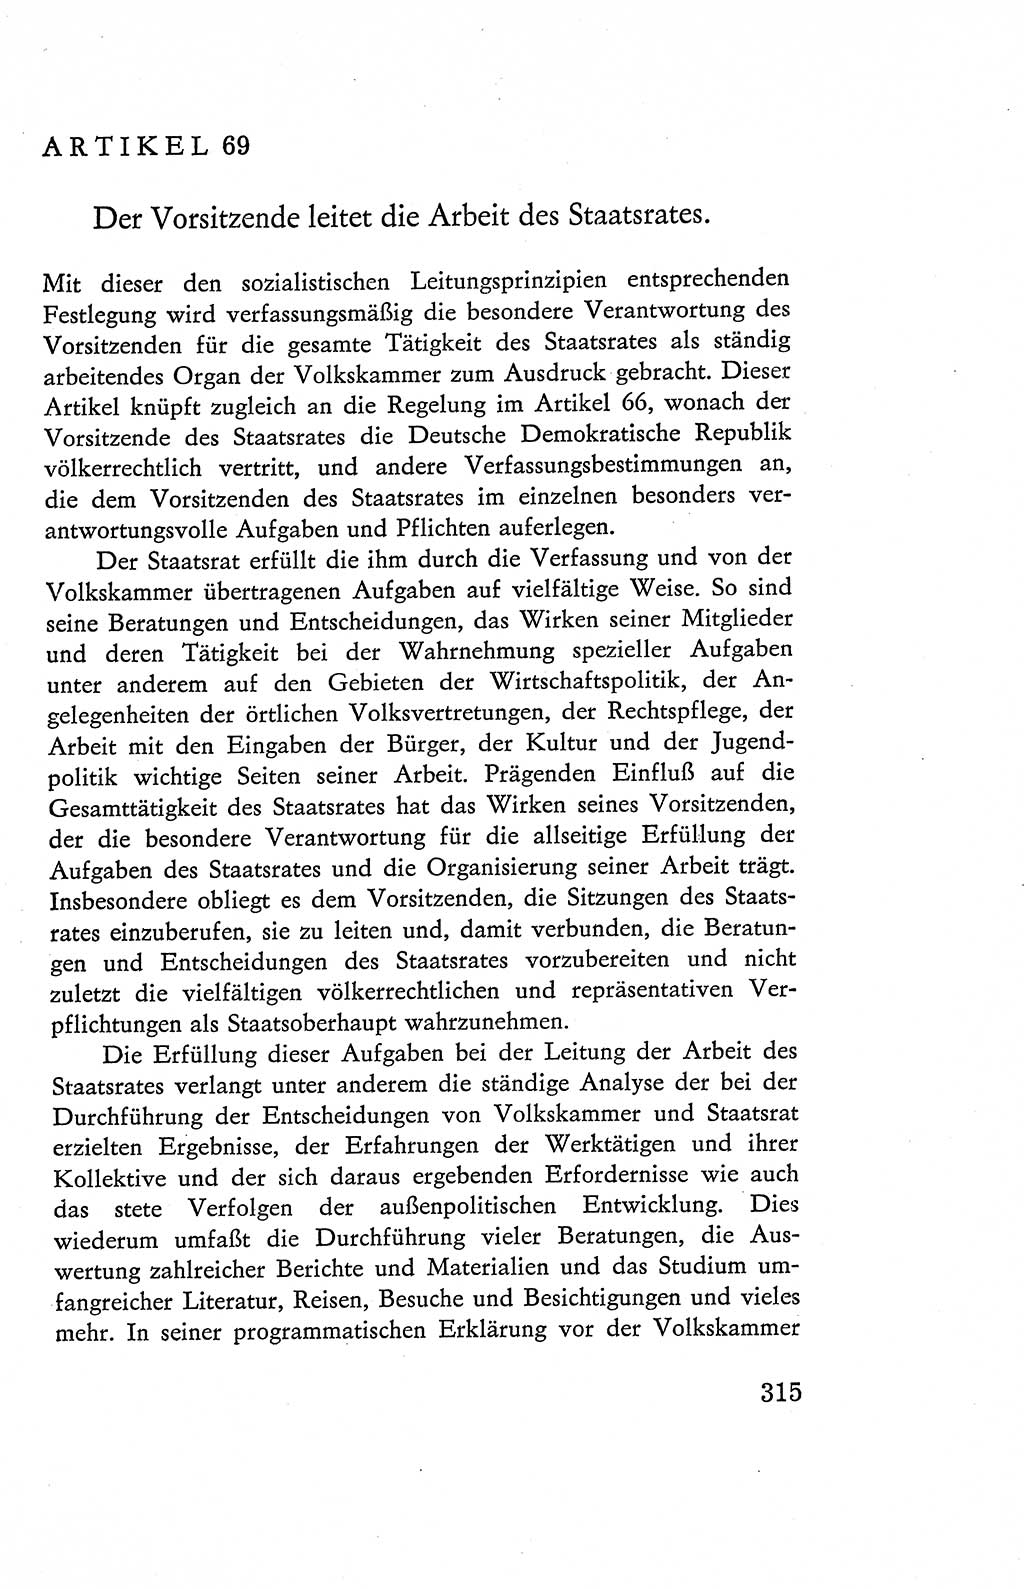 Verfassung der Deutschen Demokratischen Republik (DDR), Dokumente, Kommentar 1969, Band 2, Seite 315 (Verf. DDR Dok. Komm. 1969, Bd. 2, S. 315)